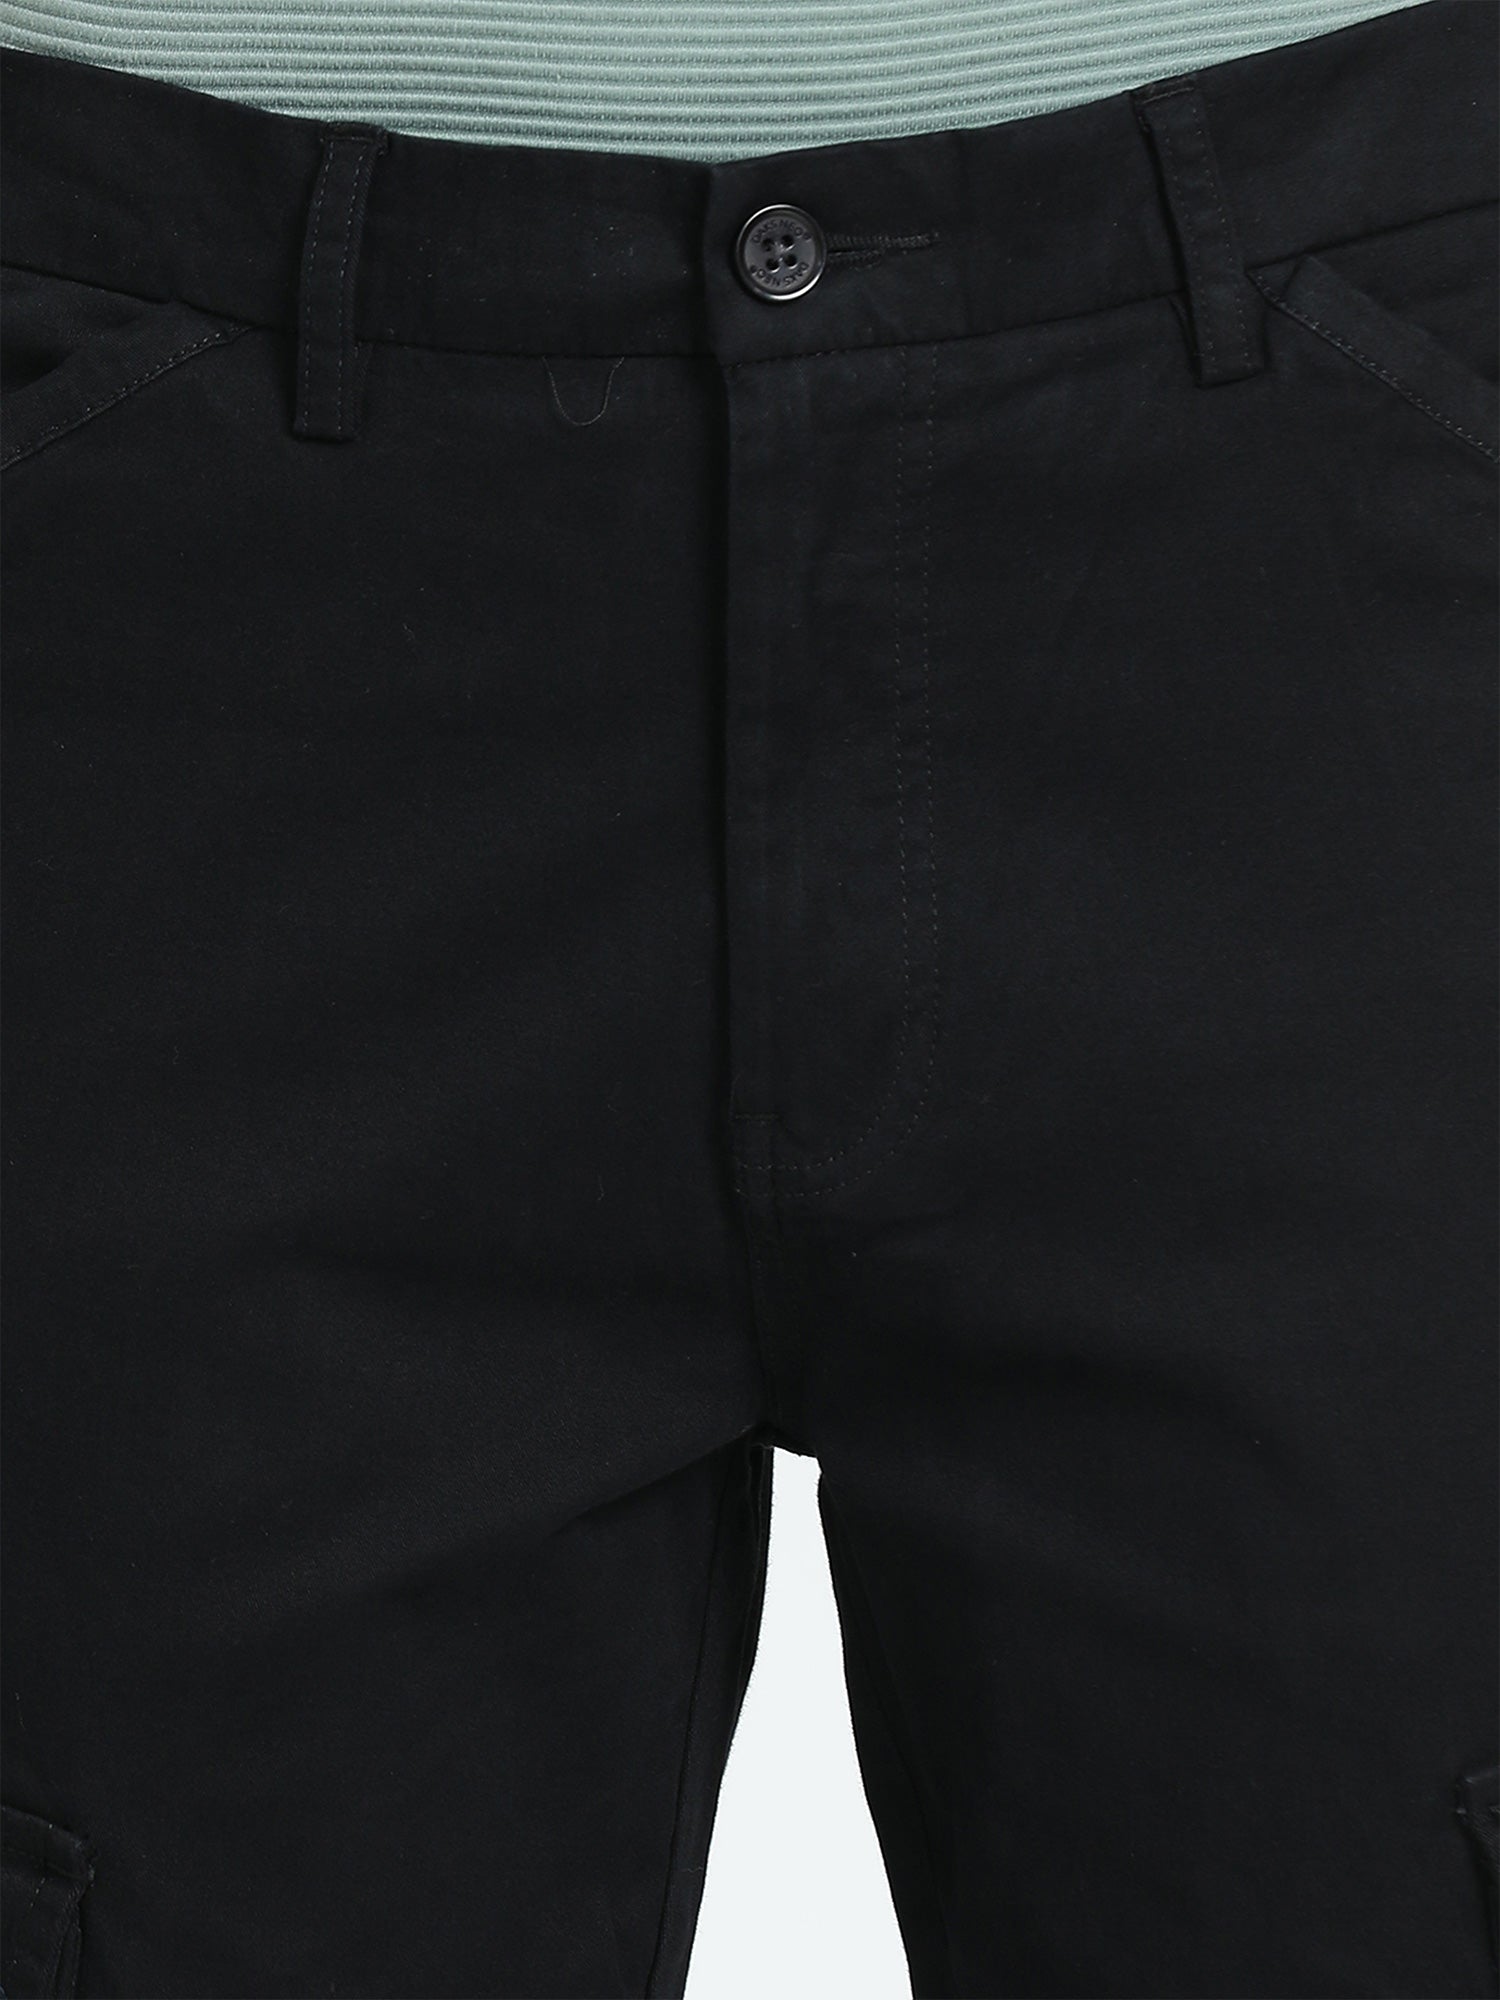 Formal Trouser: Shop Online Men Blue Cotton Formal Trouser | Cliths